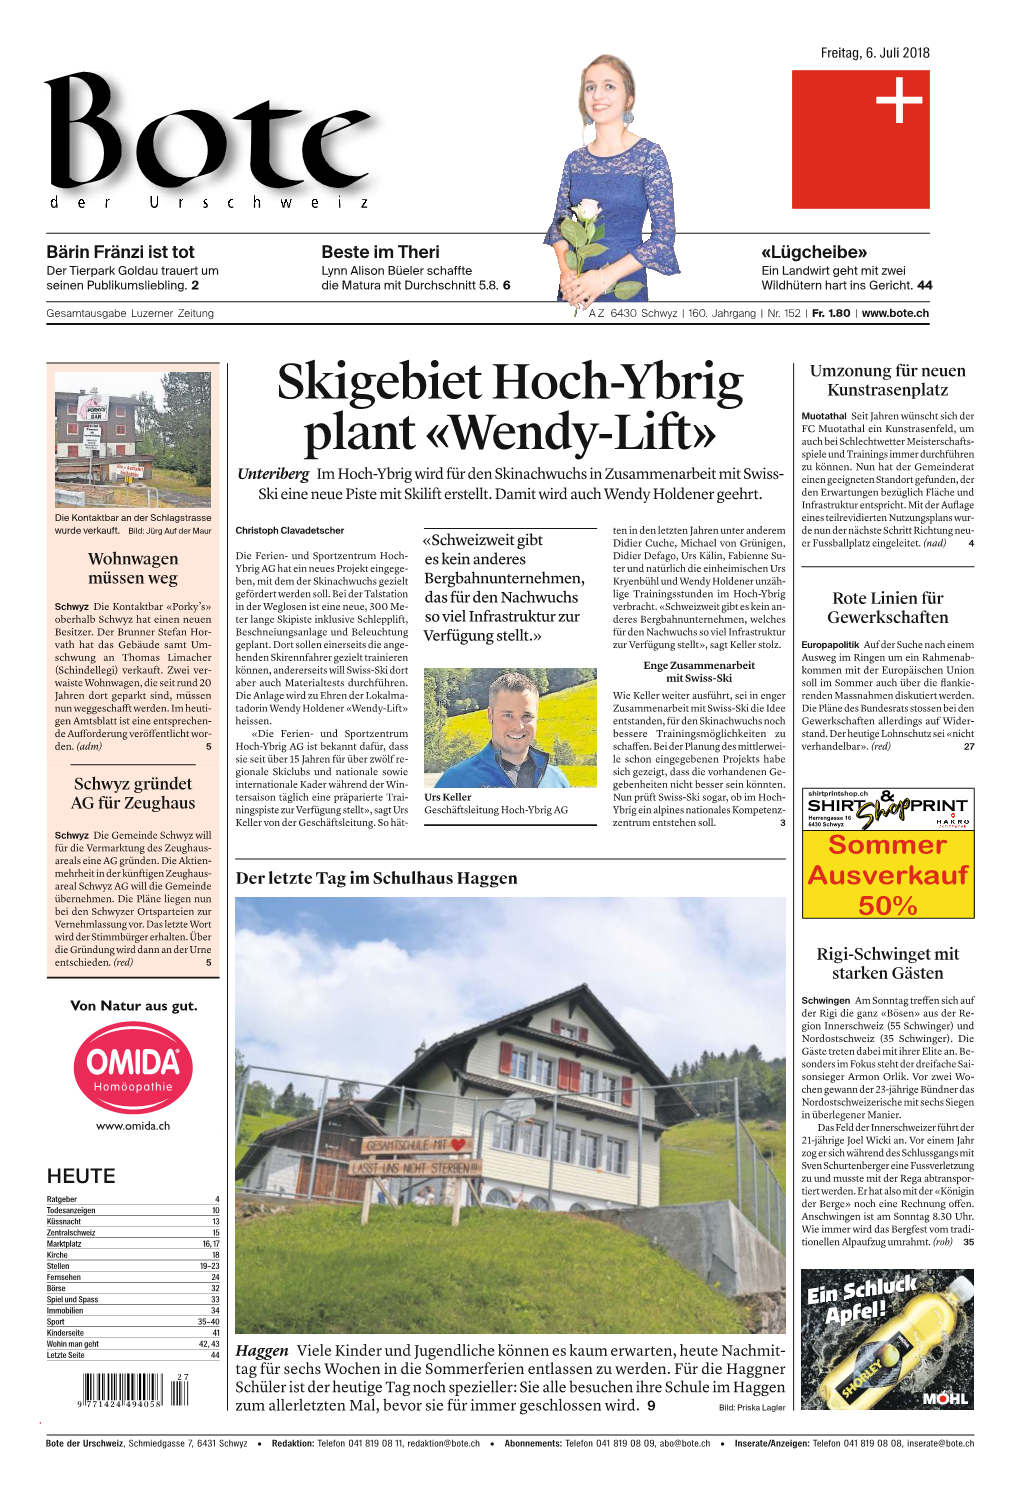 Skigebiethoch-Ybrig Plant«Wendy-Lift»